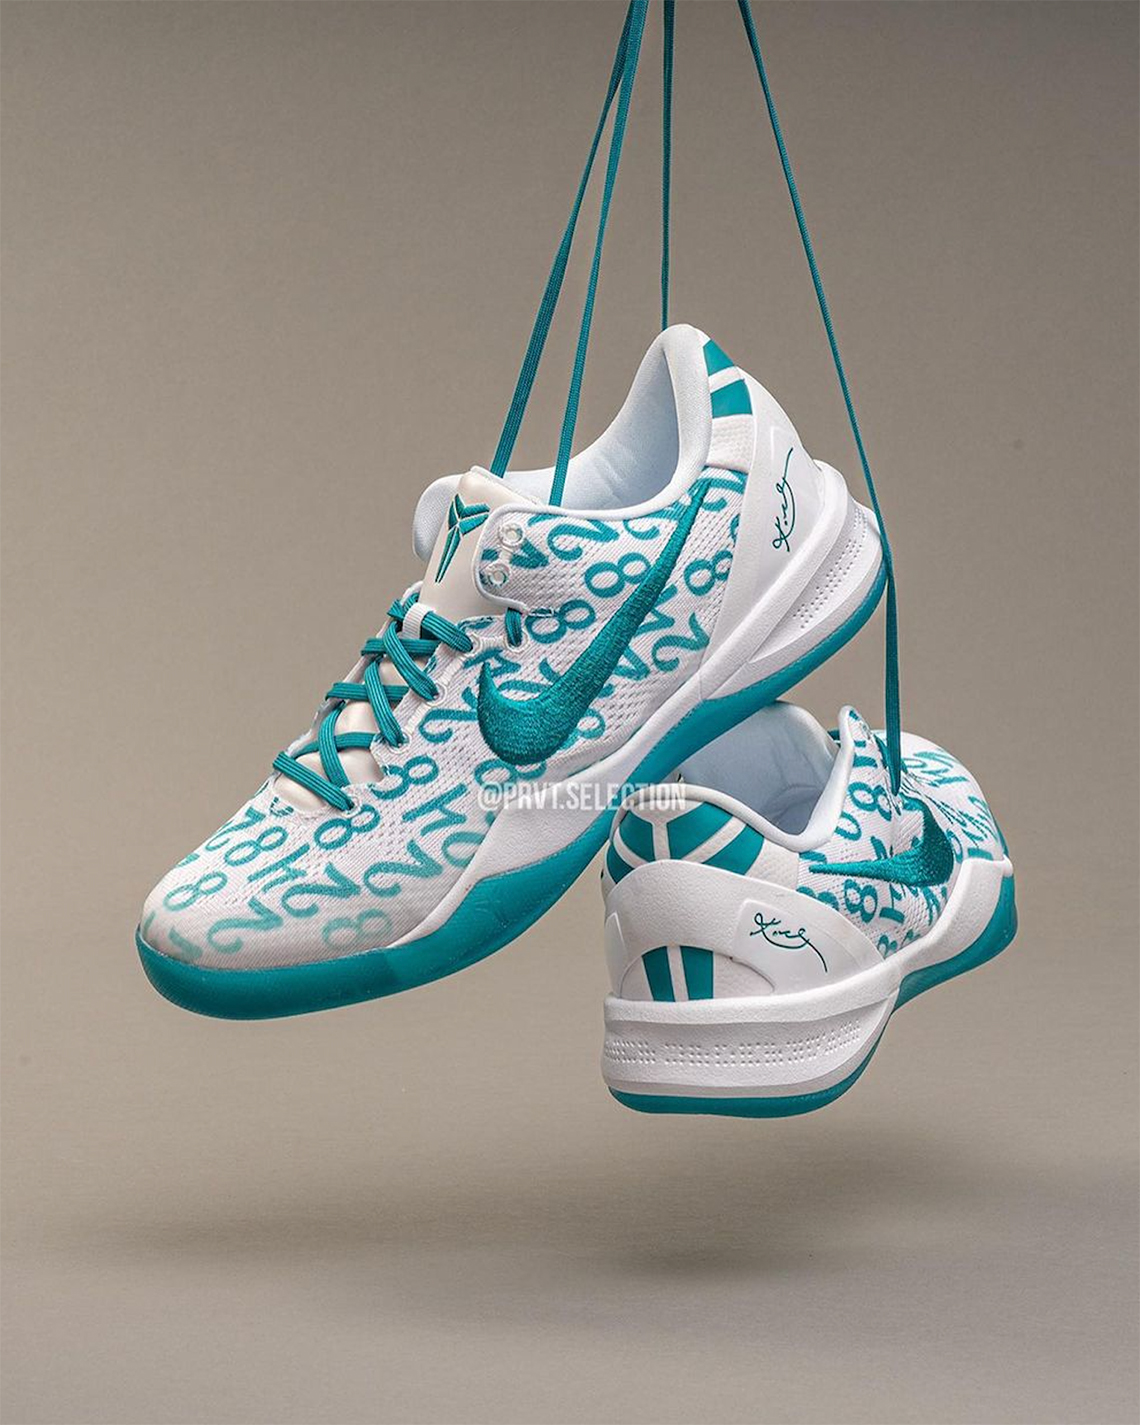 nike hurricane basketball shoes for girls Emerald Fq3549 101 1